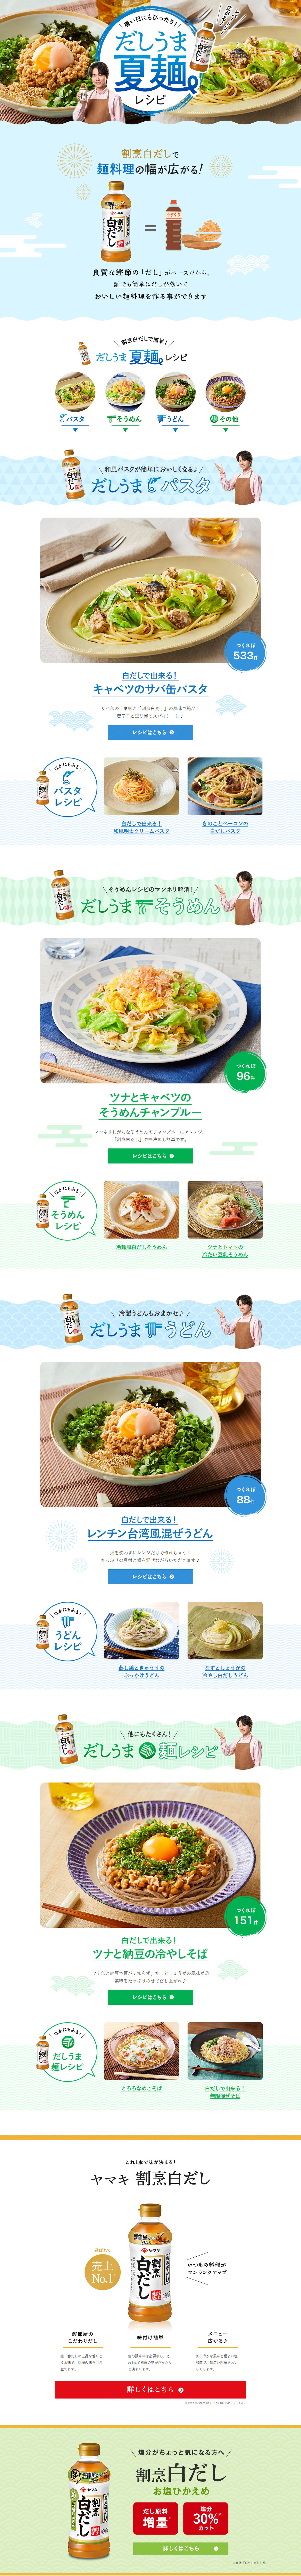 だしうま夏麺レシピ_pc_1